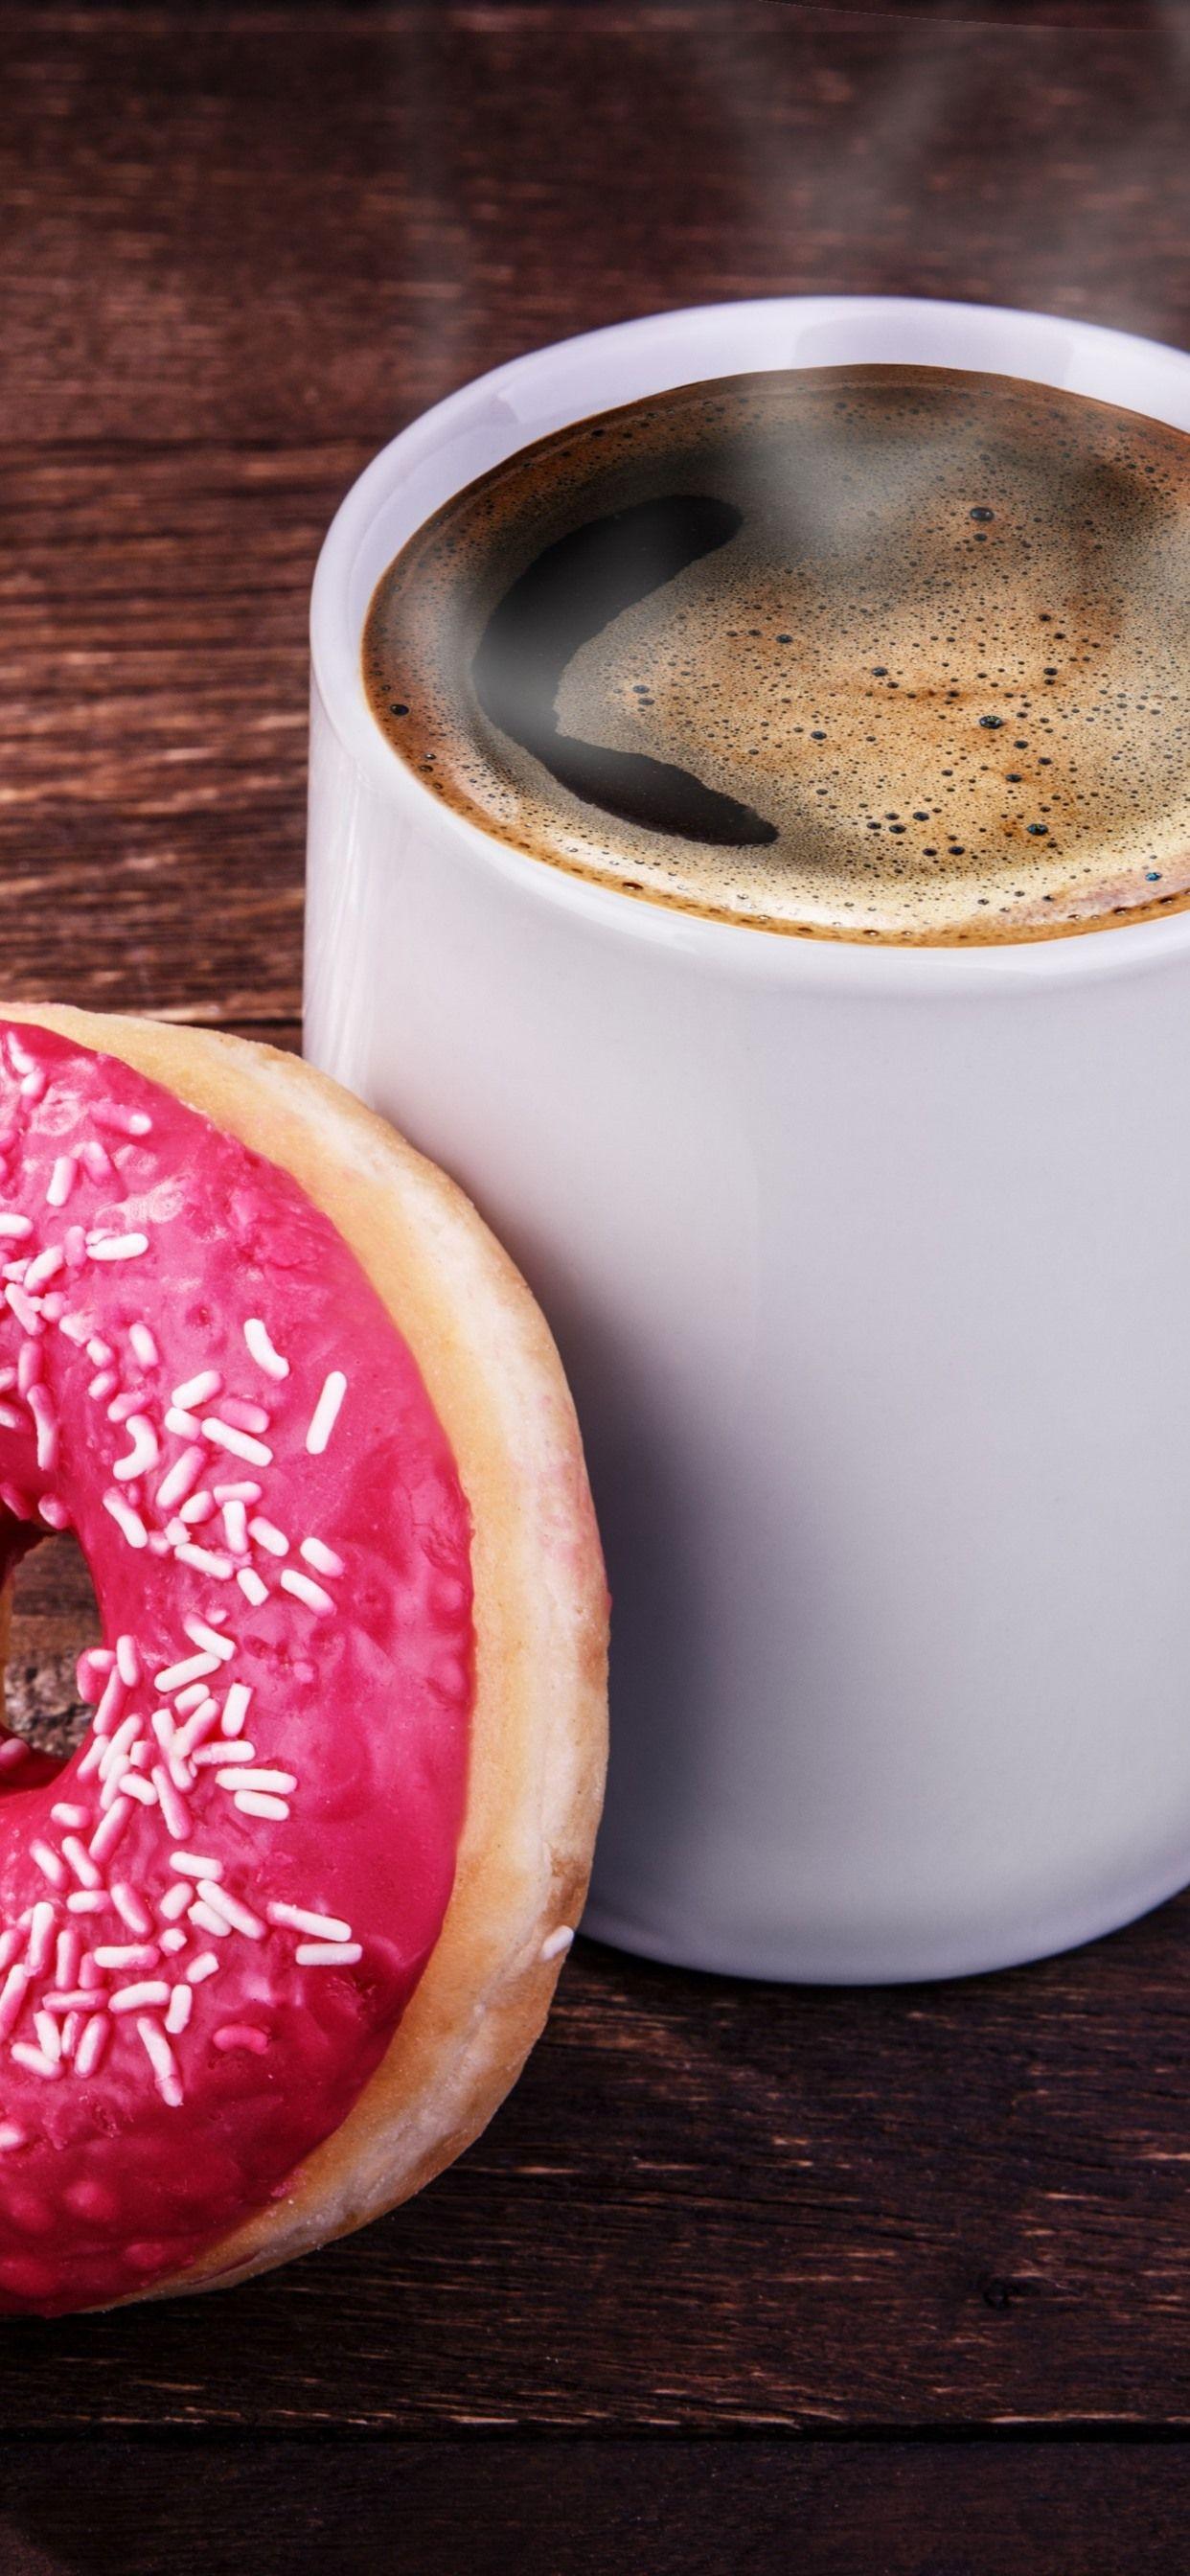 تصویر استوک فنجان سفید قهوه و دونات برای چاپ بنر کافه ها